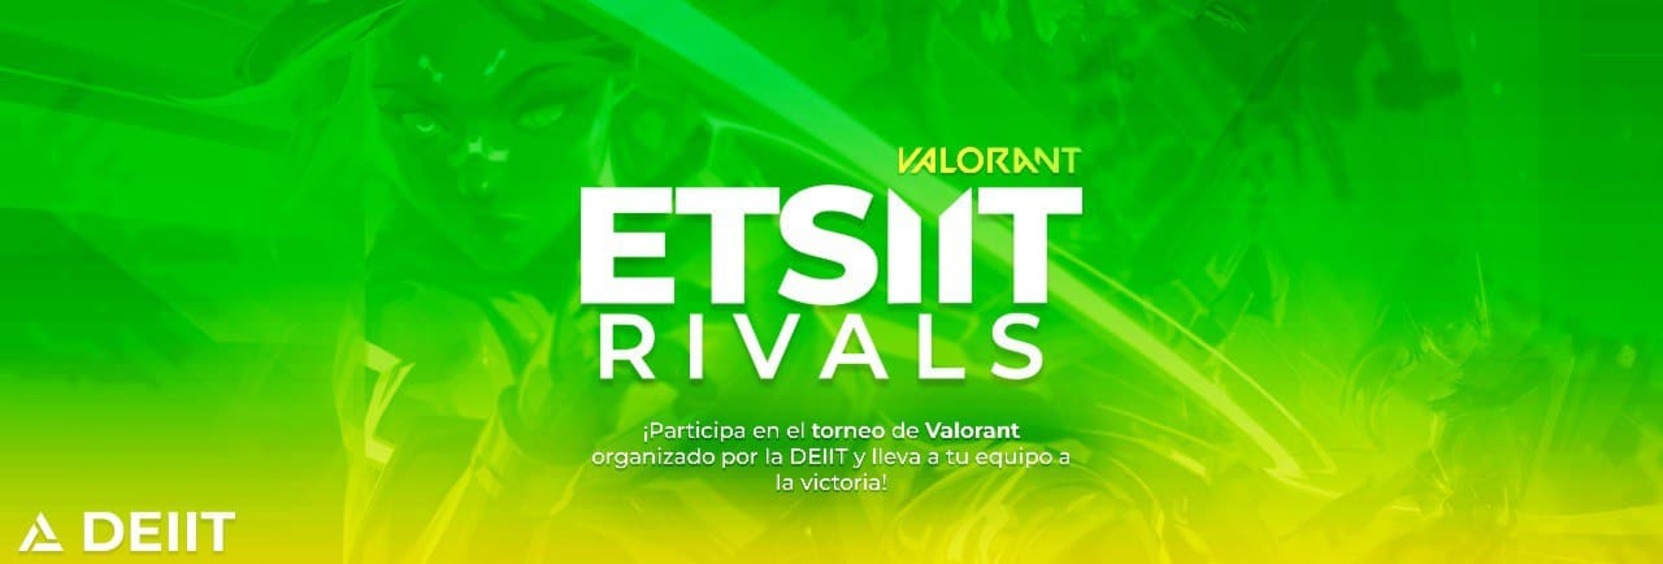 Texto ETSIIT RIVALS con un fondo verde y amarillo